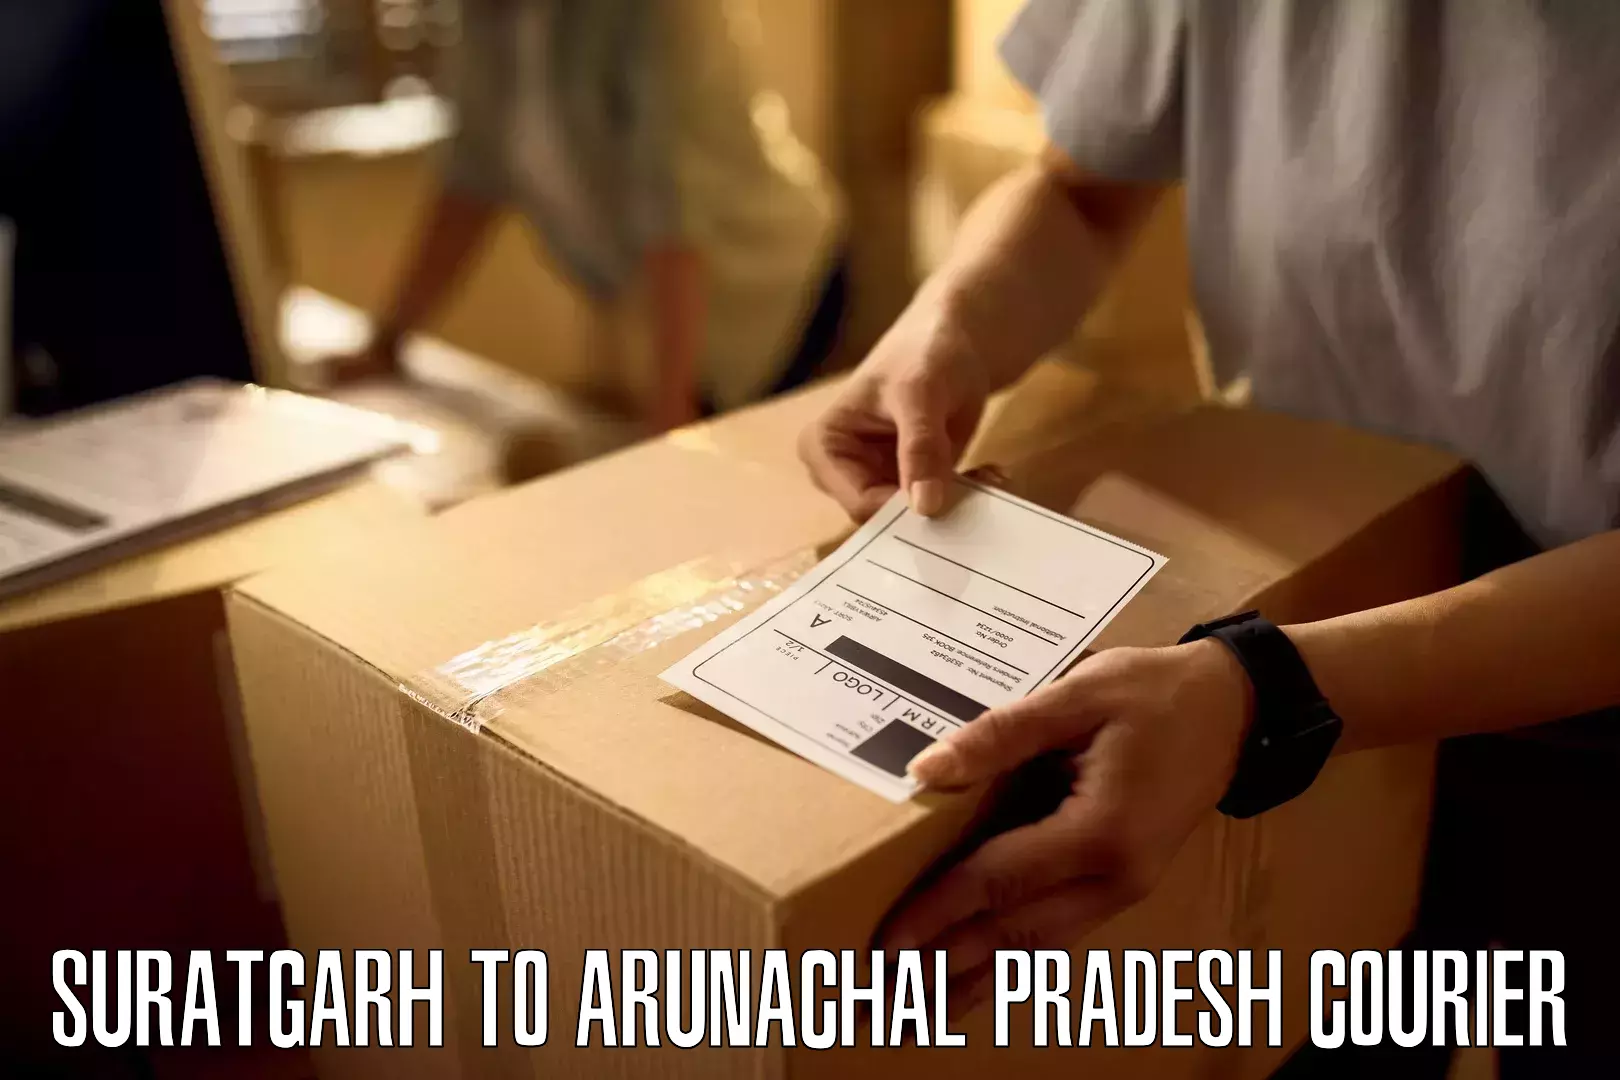 Efficient order fulfillment Suratgarh to Deomali